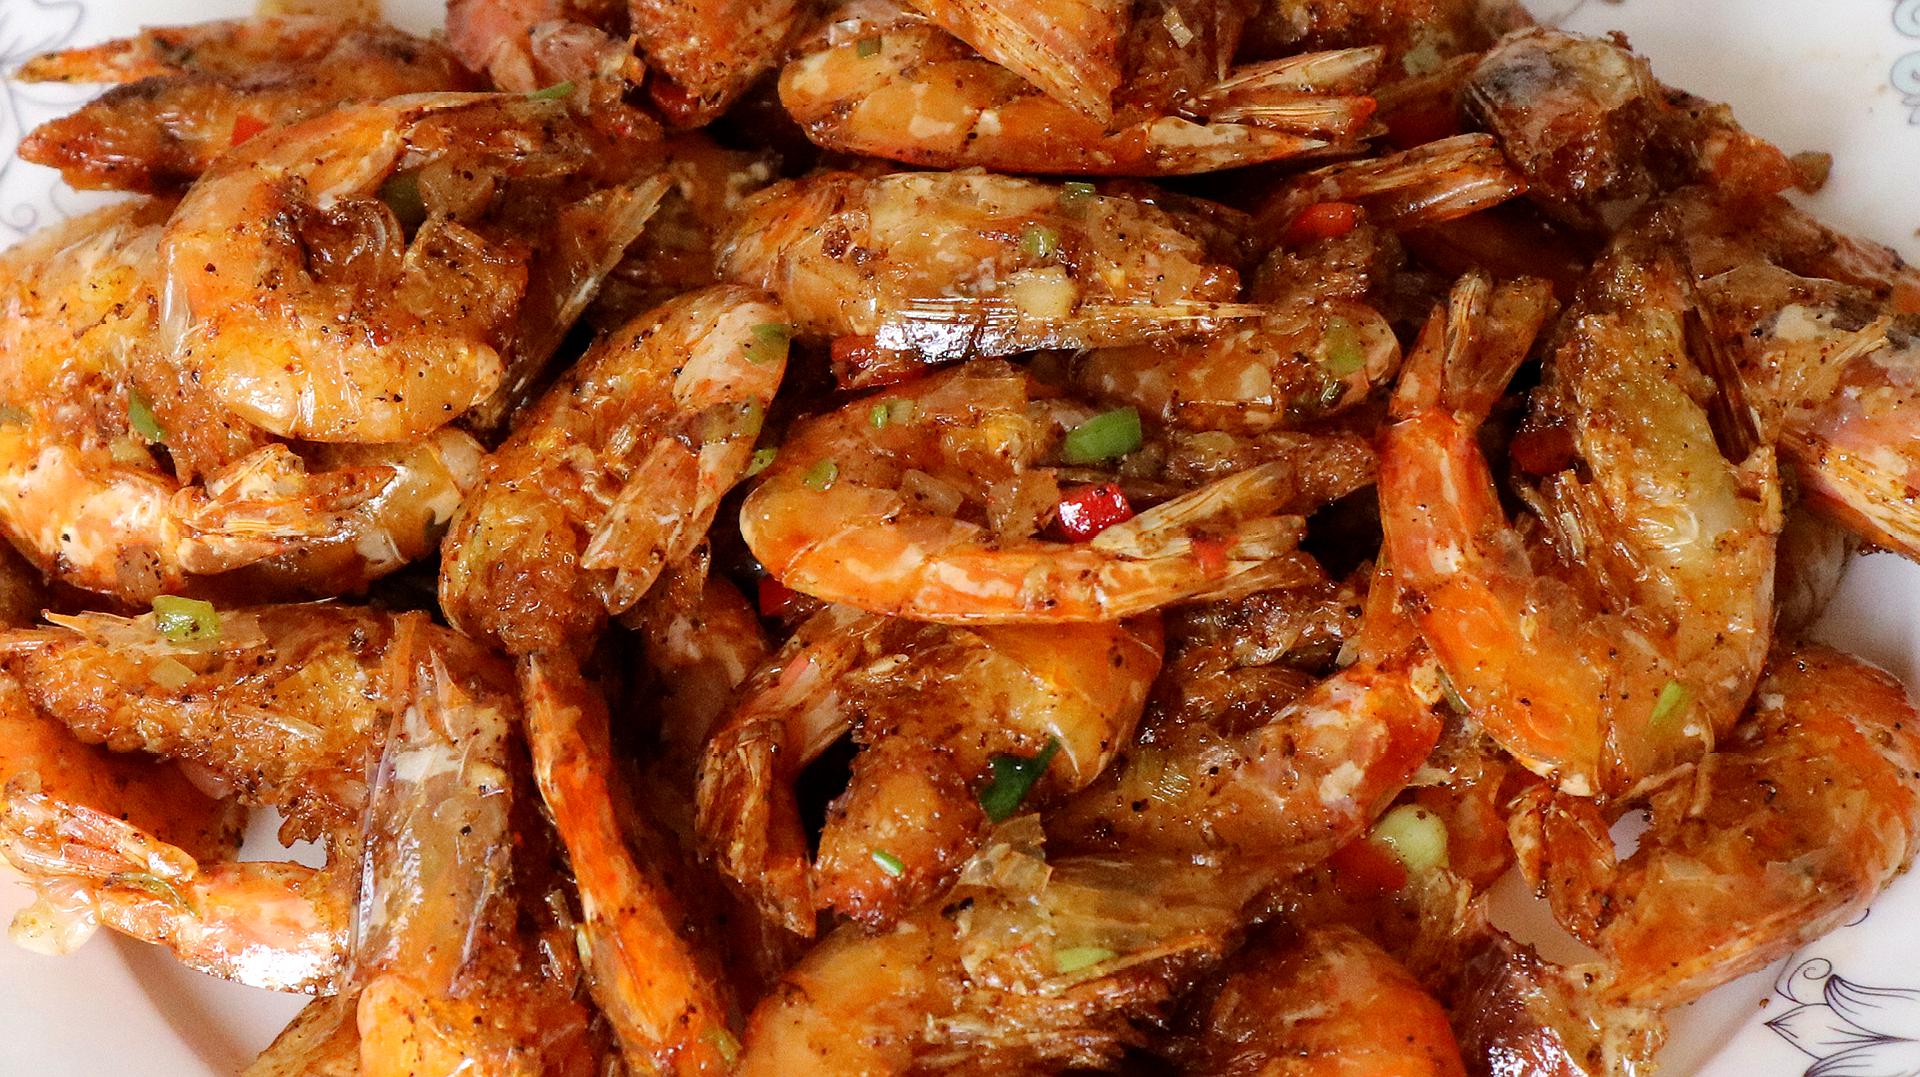 椒盐虾怎样做到外焦香辣,肉质软嫩鲜美,饭店的做法,在家也能做